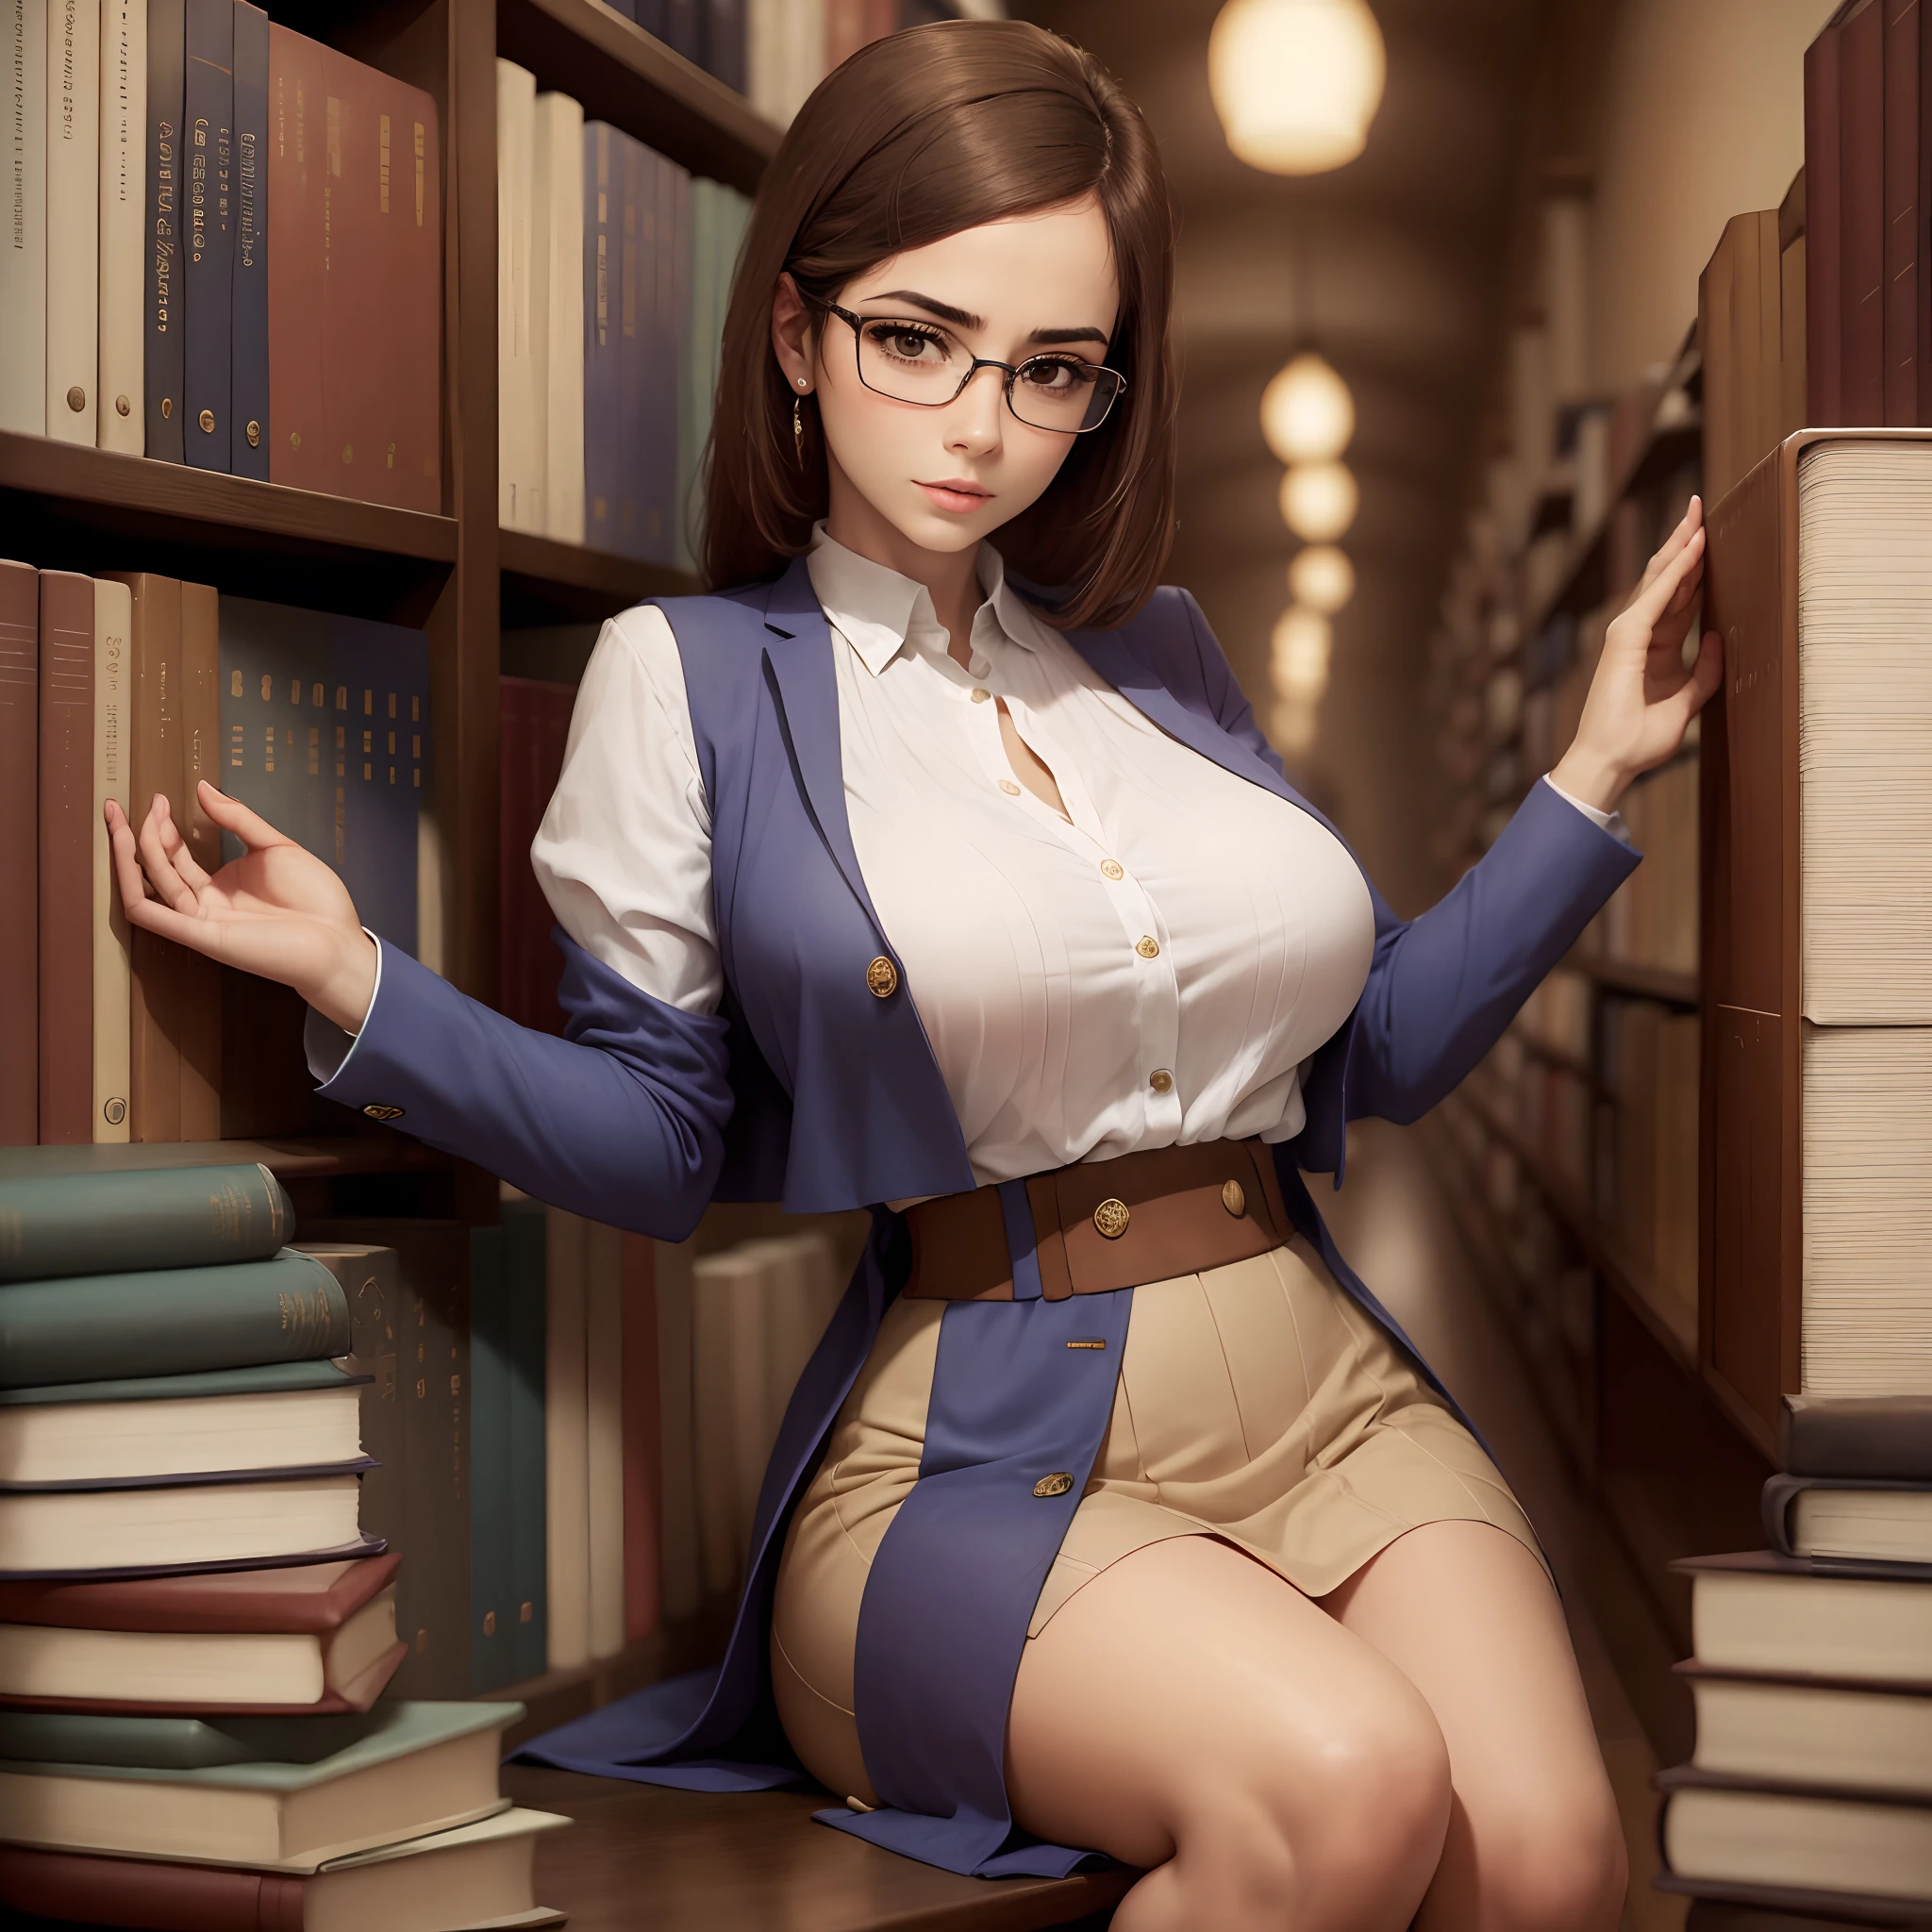 1mujer, hermosa, sensual, en biblioteca, con lentes, pechos grandes, delgada, elegante